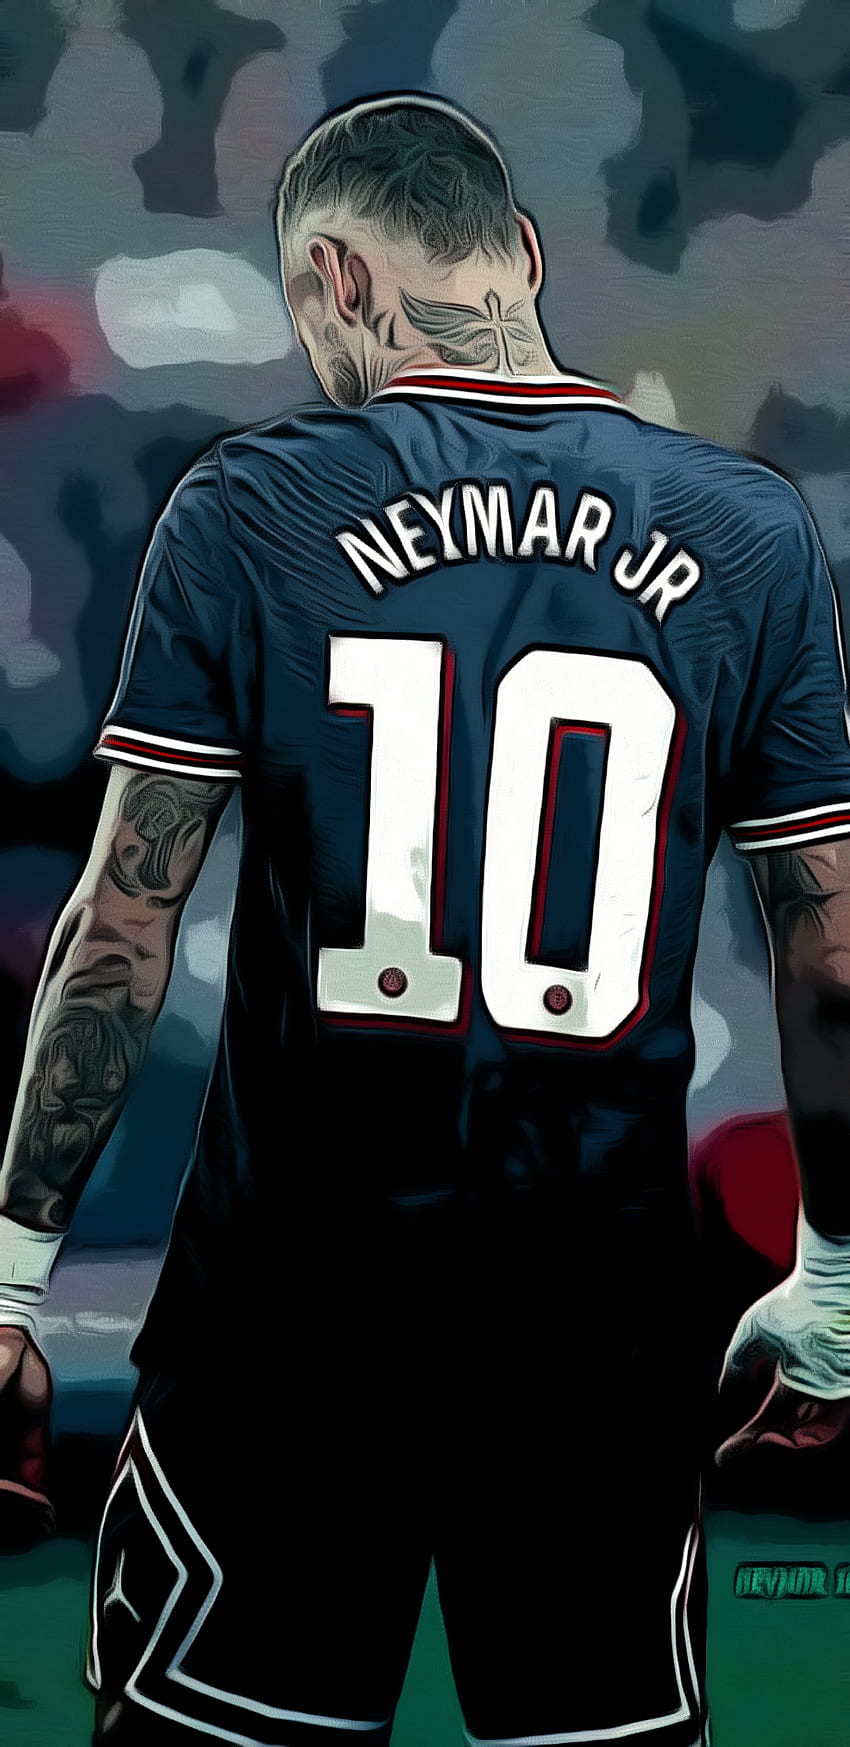 How to draw Neymar Jr